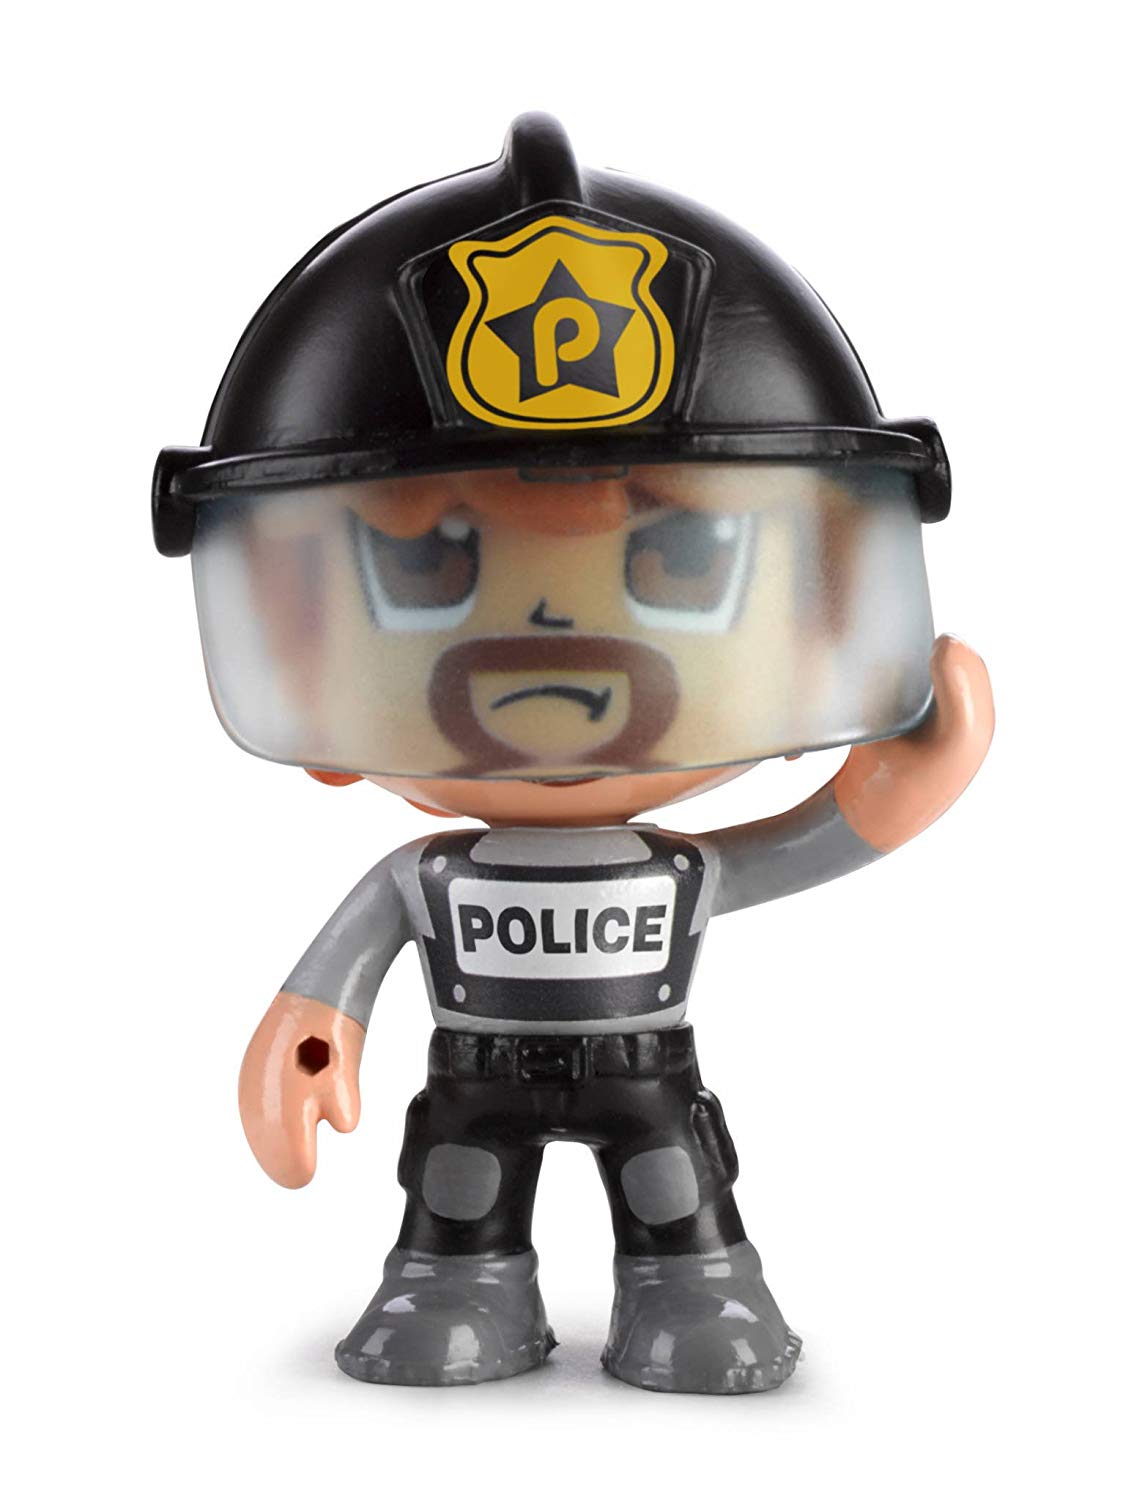 Multicolore Scientifique Famosa 700014490 Voleur et Aventurier Pinypon Action- Pack de 5 figurines Police Super-héros 